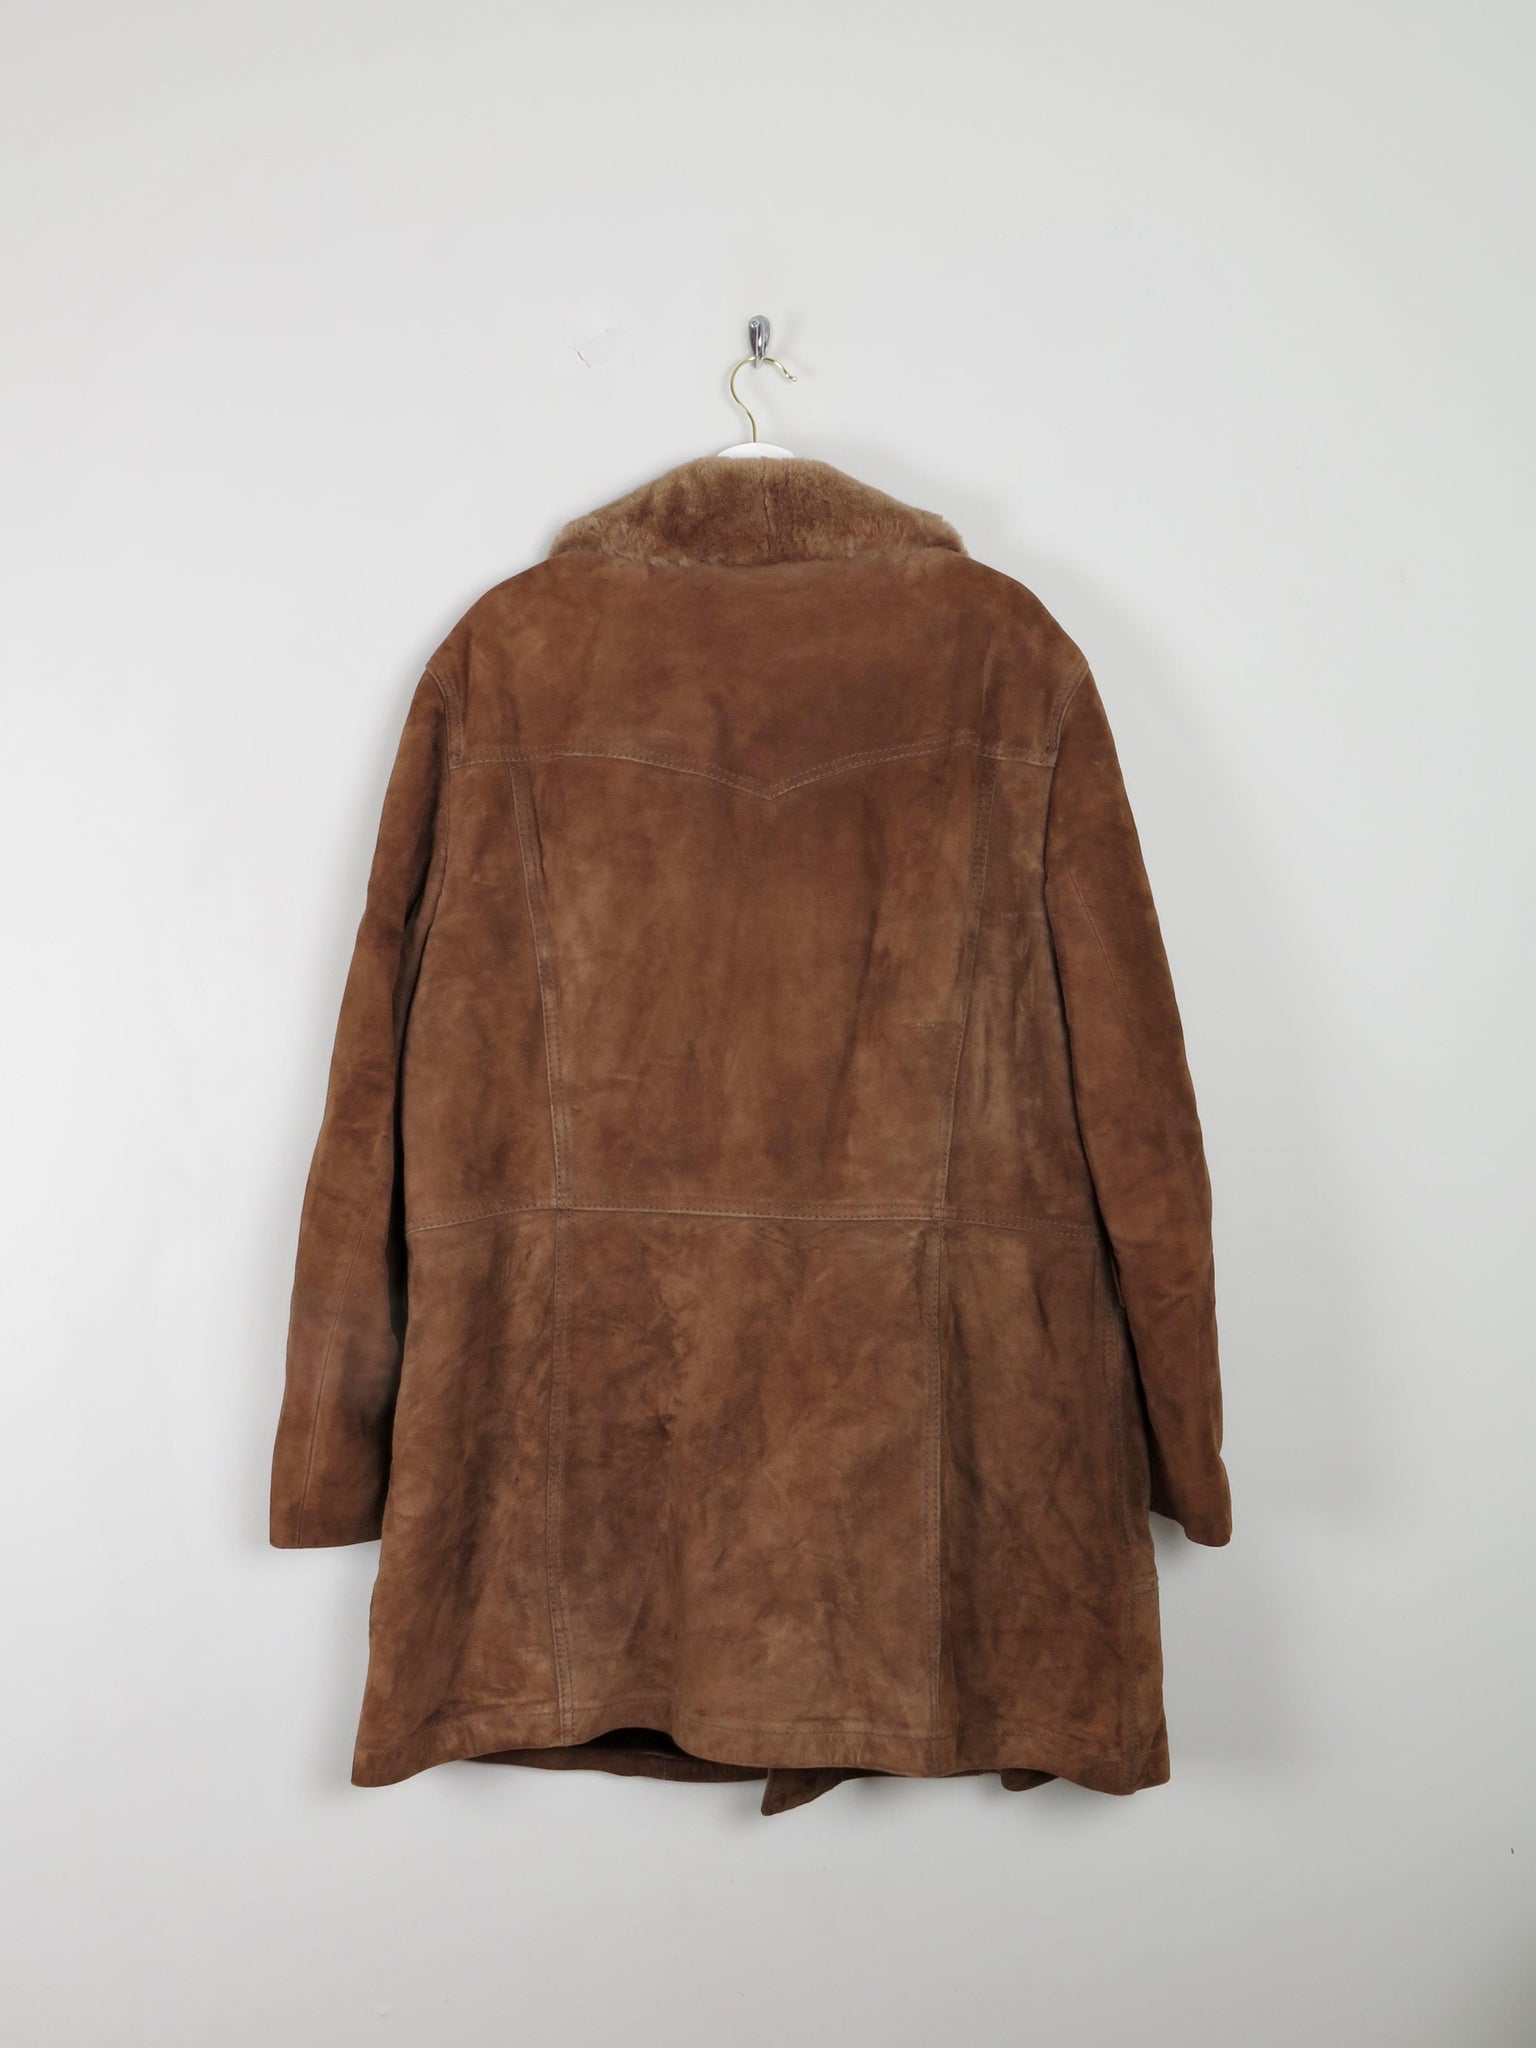 Men's Vintage Sheepskin 3/4 Coat L - The Harlequin